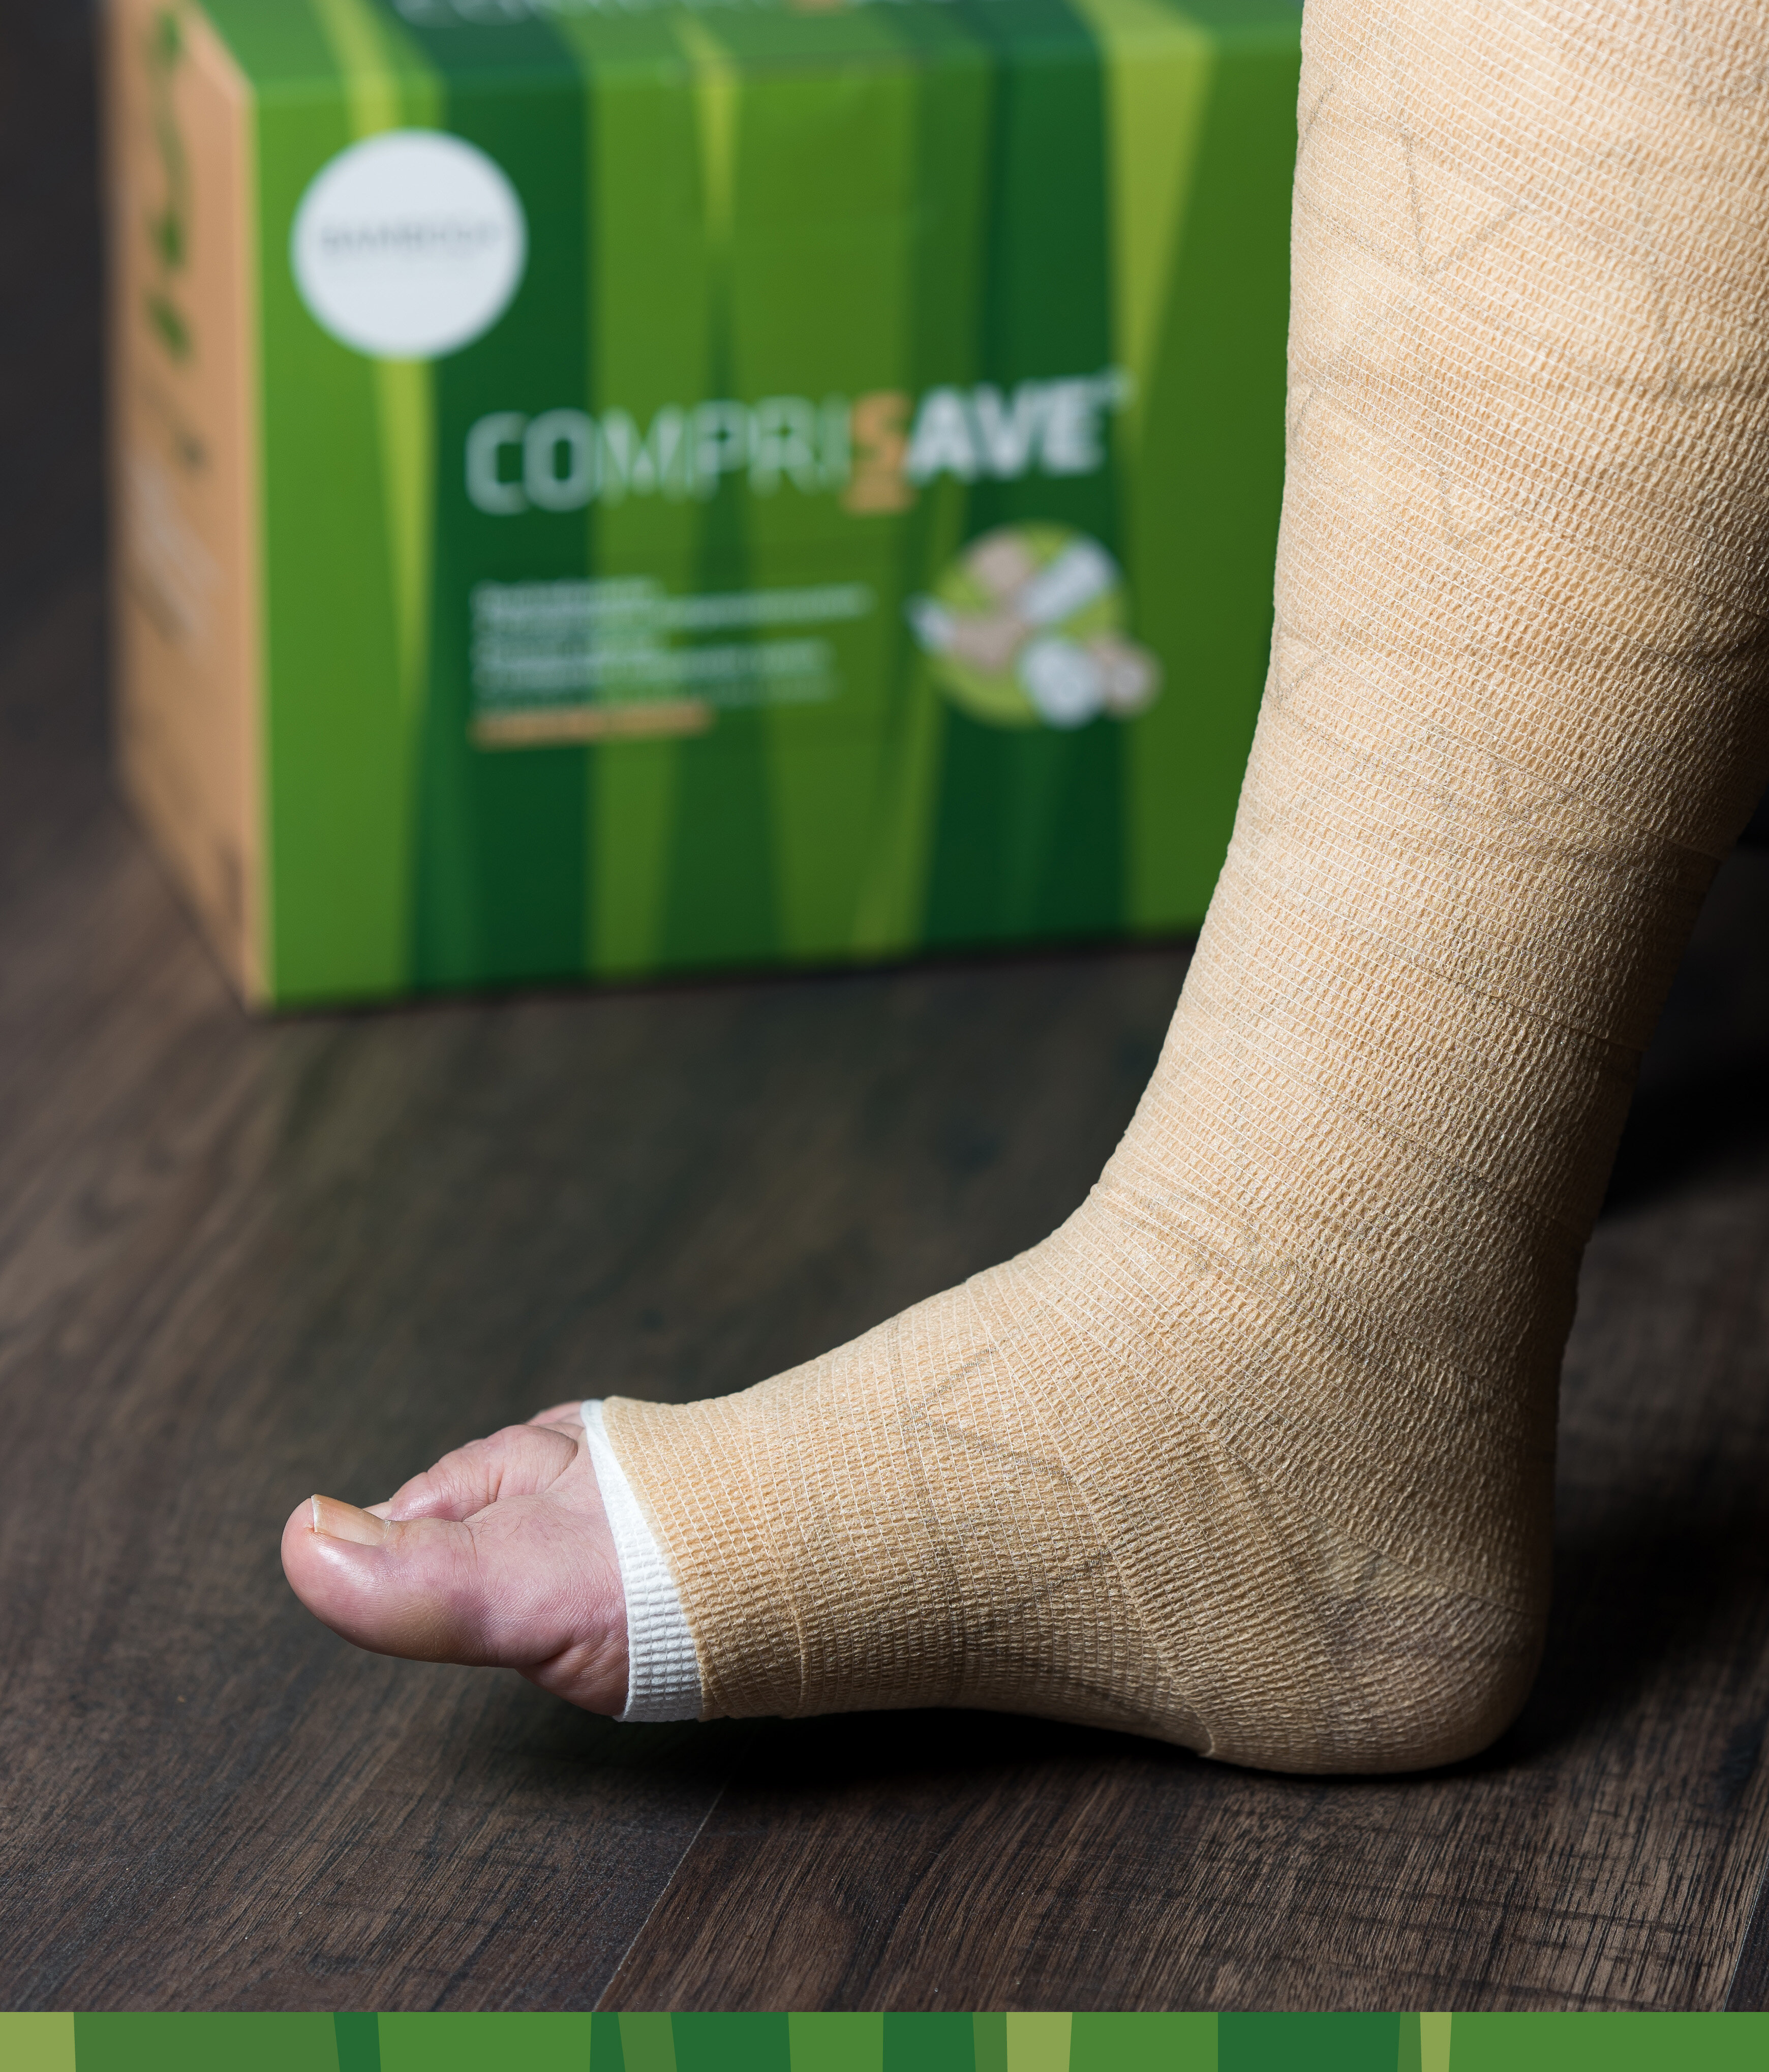 Fuß mit angewickeltem CompriSave® Kompressionsverband mit Verpackung im Hintergrund. | © Bamboo Health Care GmbH